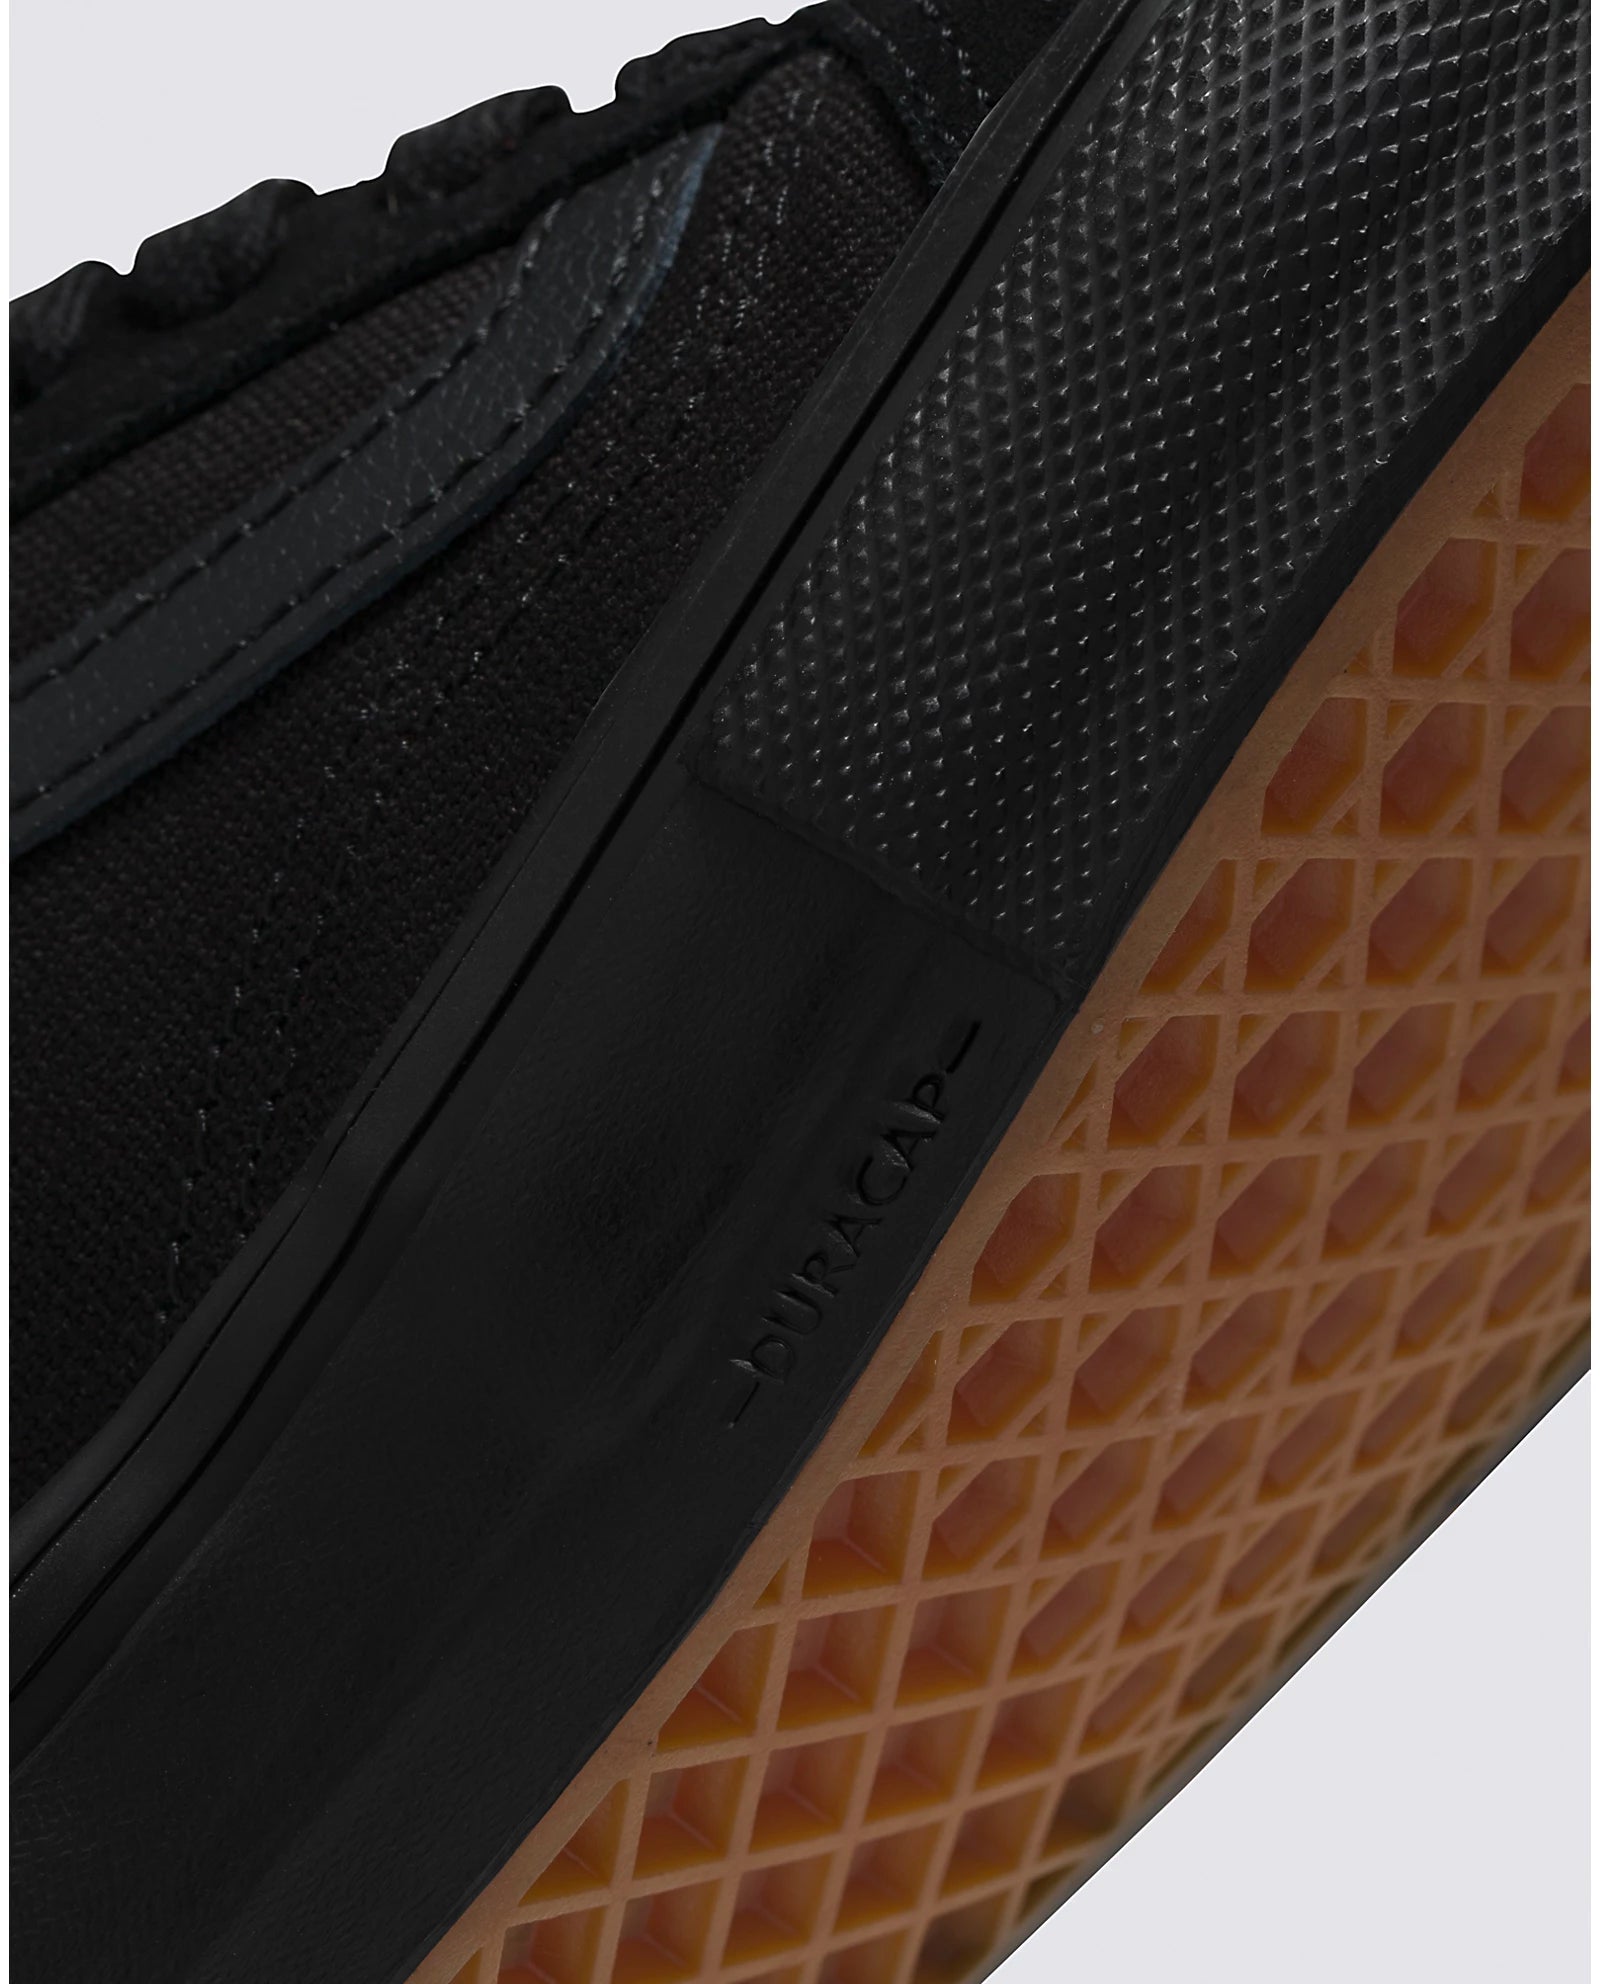 Black/Black Vans Skate Old Skool Skate Shoes Detail